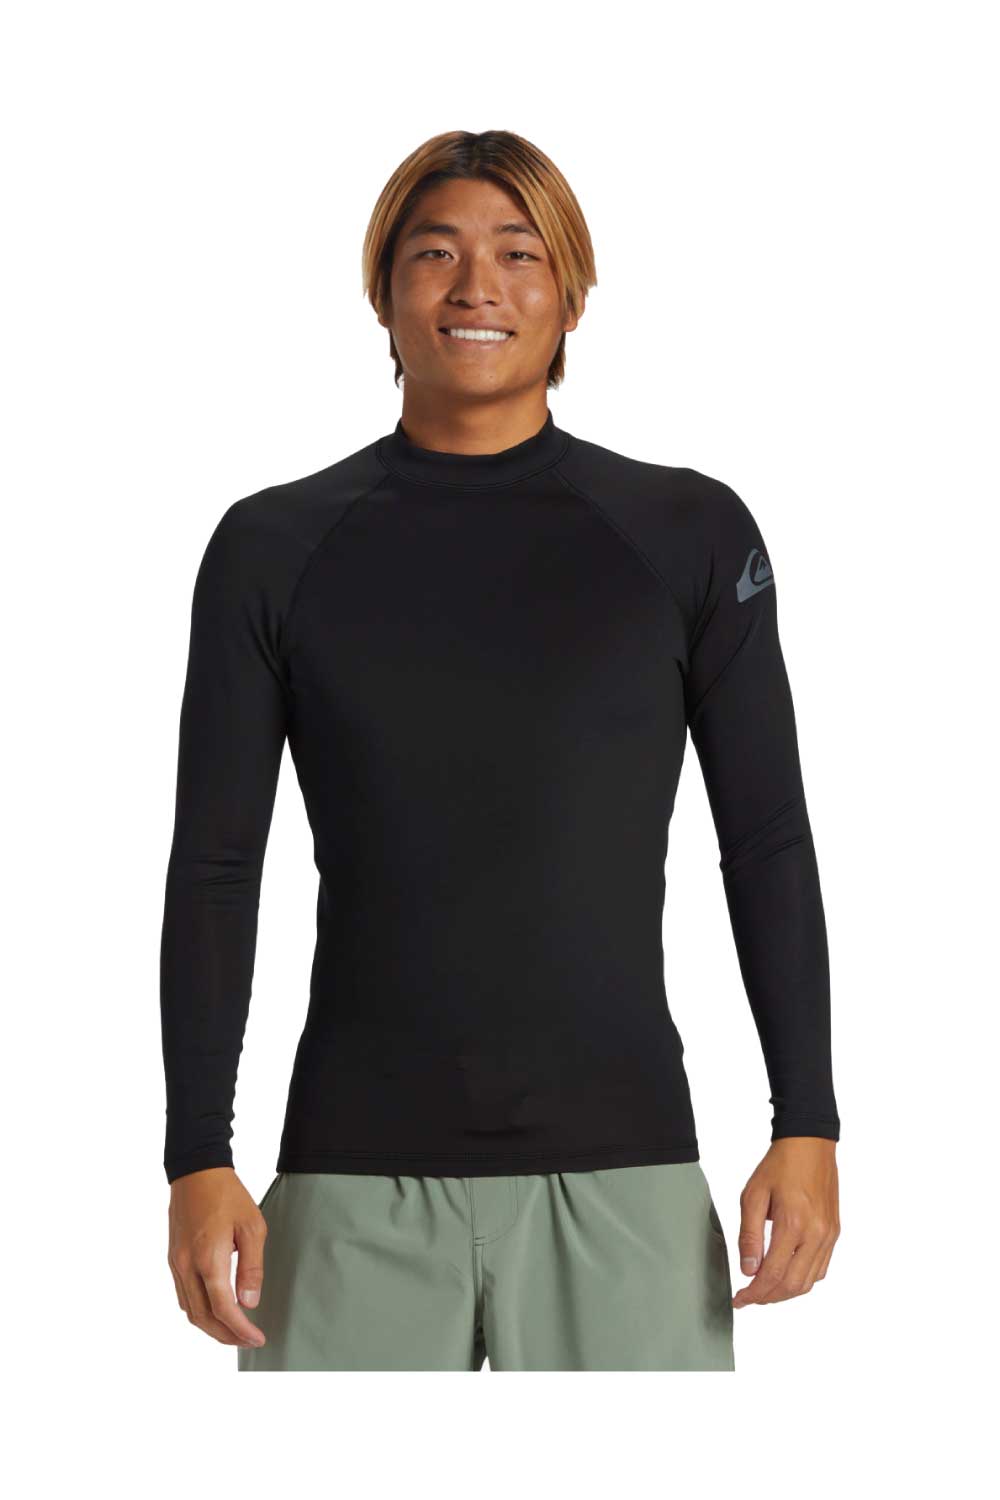 Quiksilver Everyday Long Sleeve Surf Rashguard Tee- Quarry, Mens UV Shirts